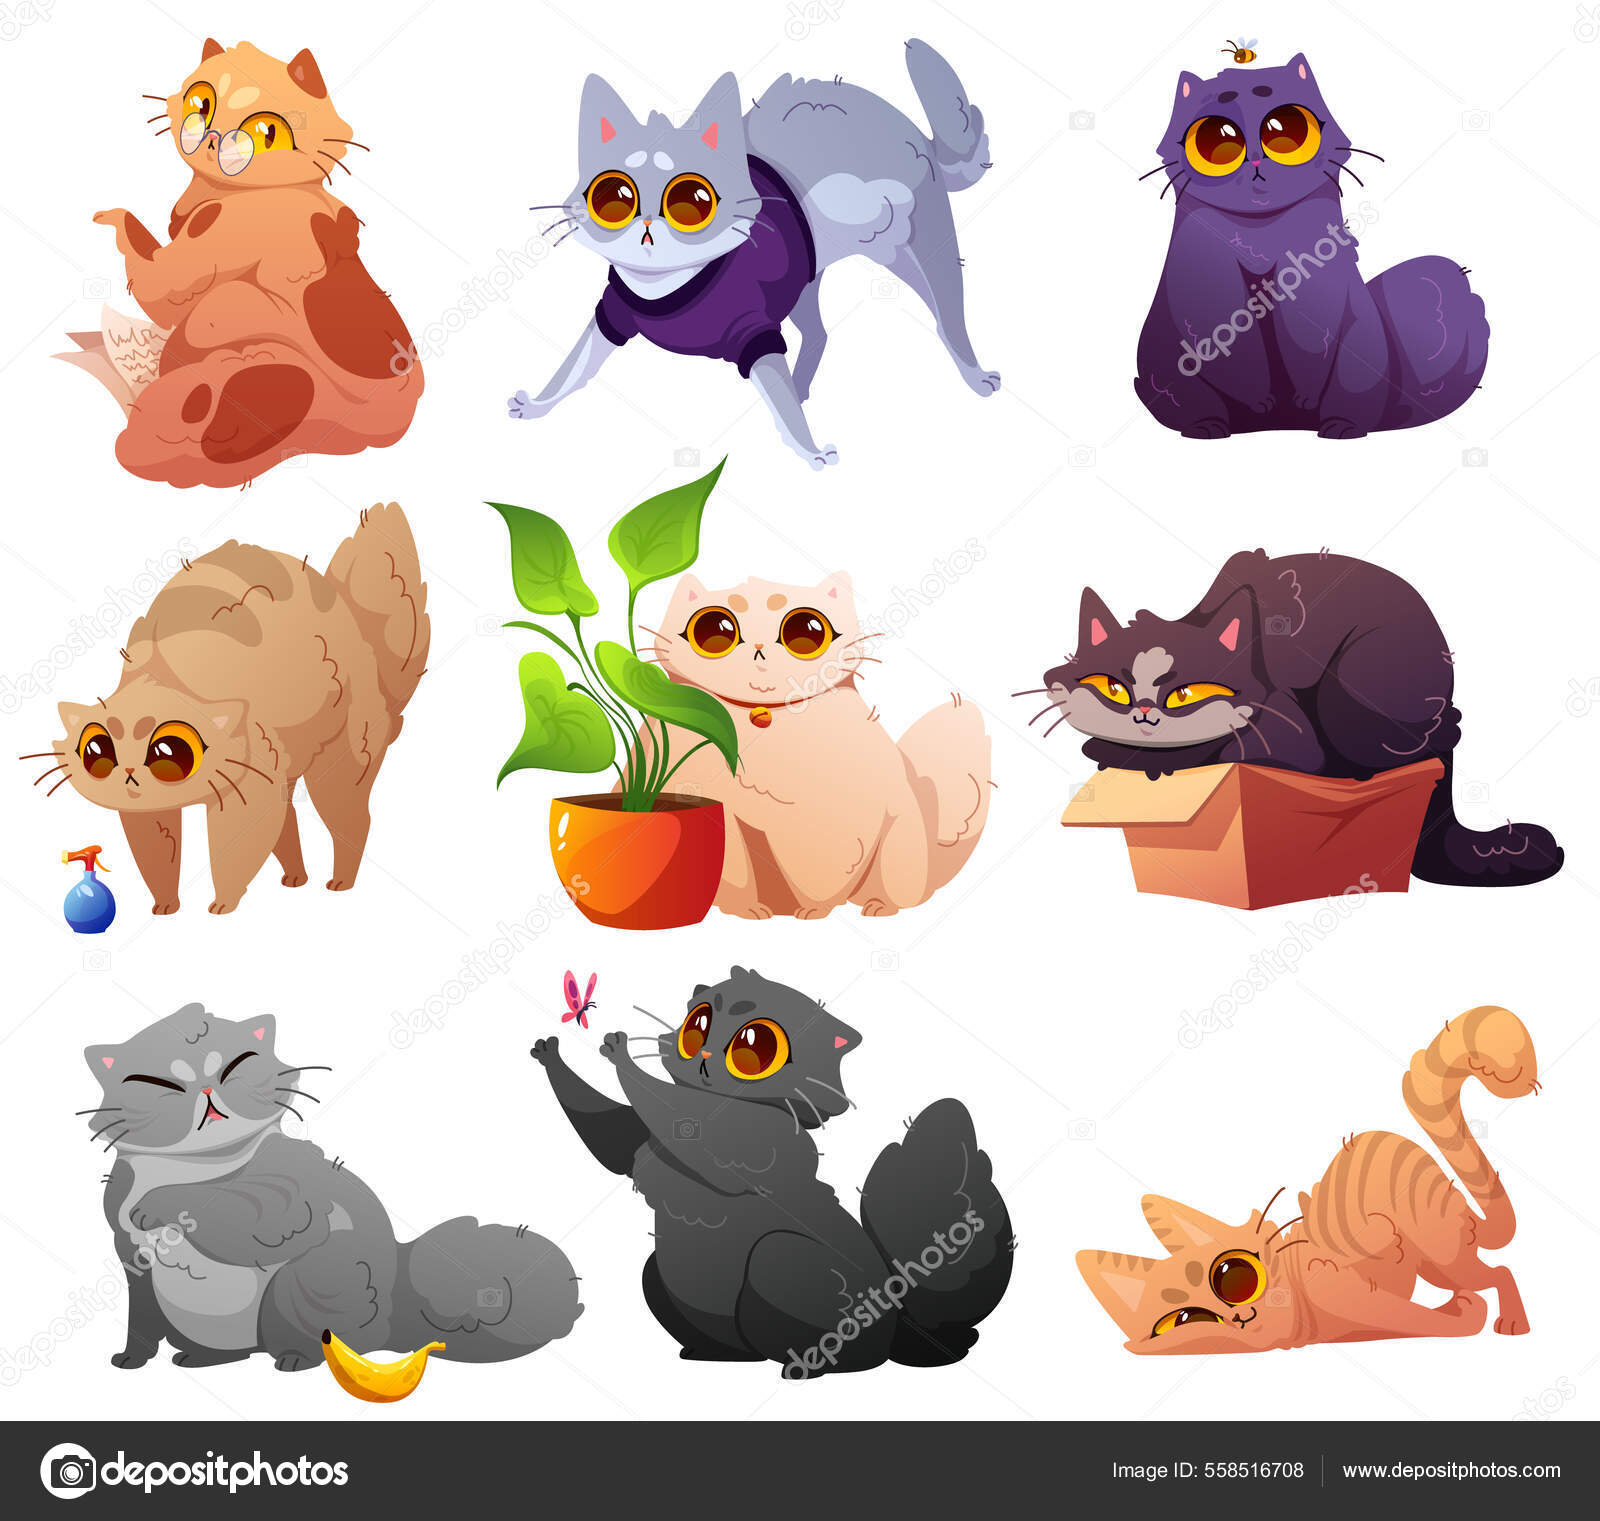 Gatinho bonito  Gatos bonitos, Gatos de desenho animado, Animais